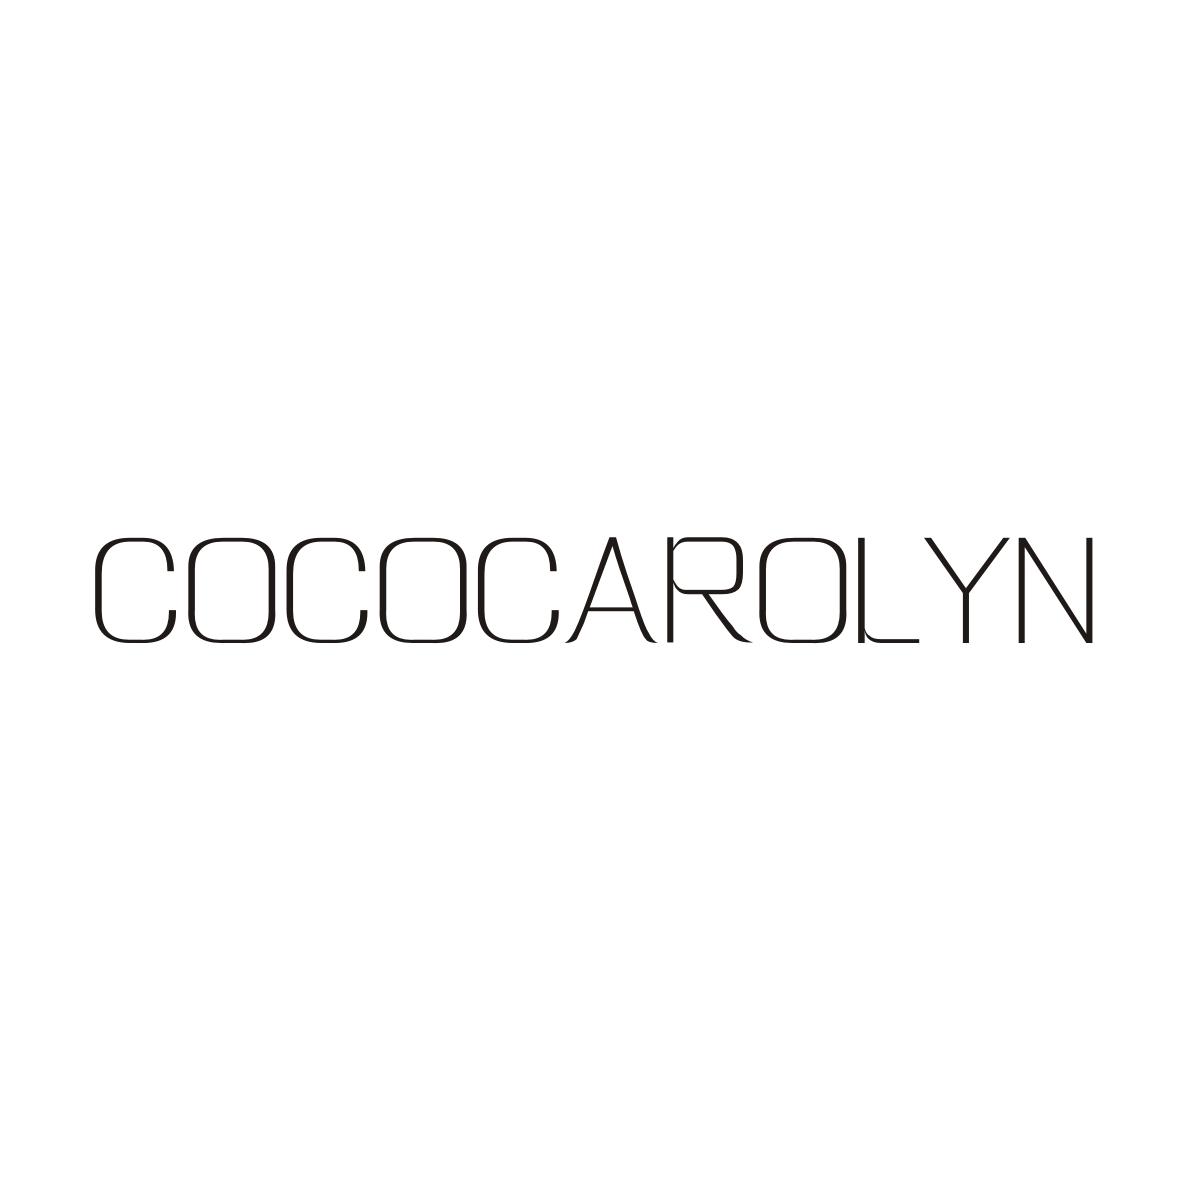 COCOCAROLYN 商标公告